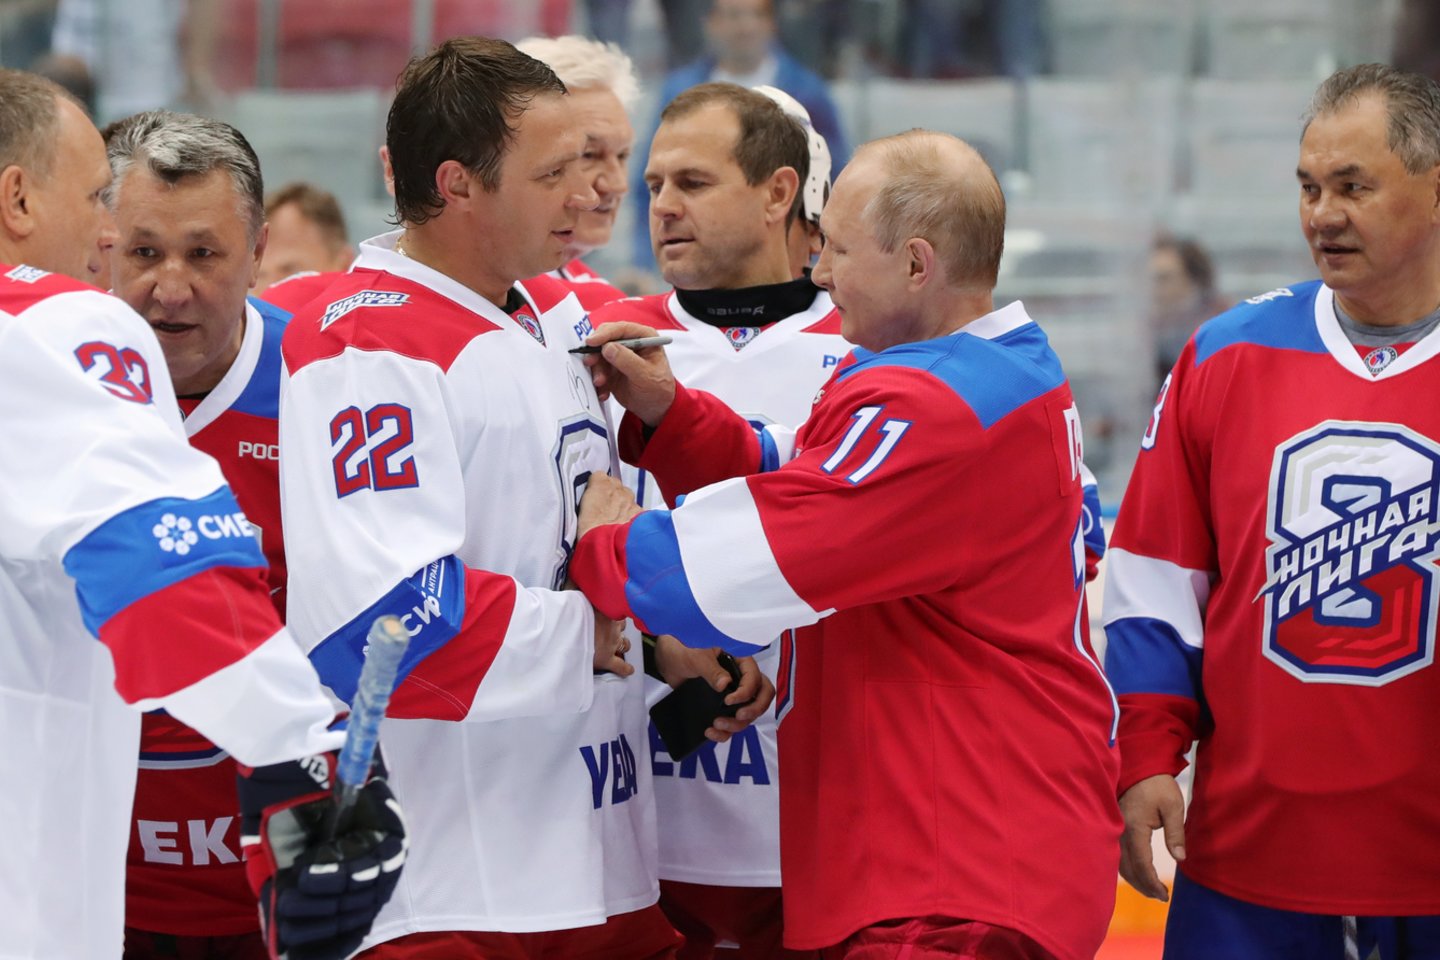 V.Putinas sudalyvavo ledo ritulio rungtynėse ir pelnė net 10 įvarčių<br> Scanpix.com nuotr.